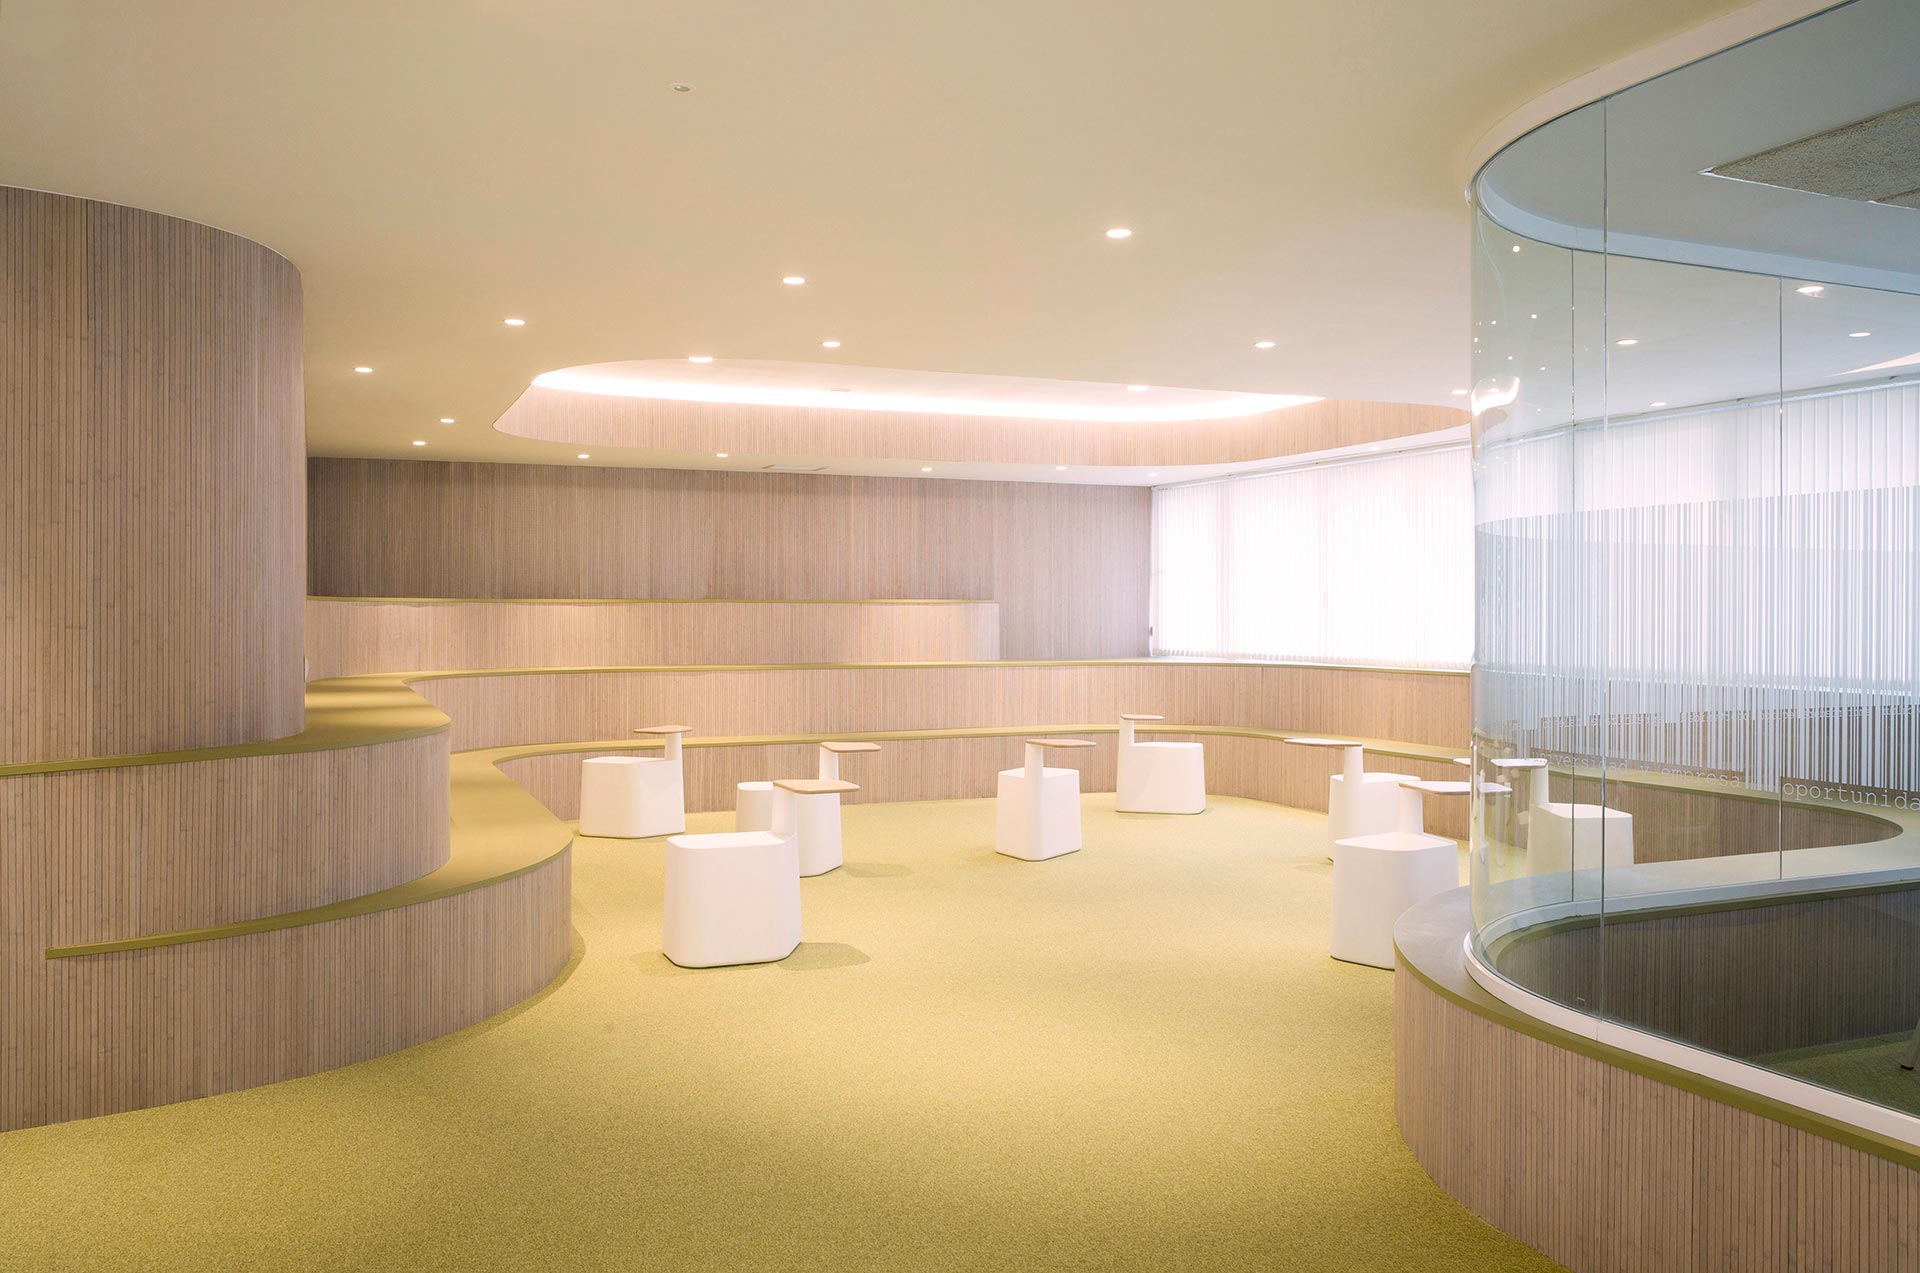 Centro de Emprendimiento CISE diseñado por Moah Arquitectos en Santander